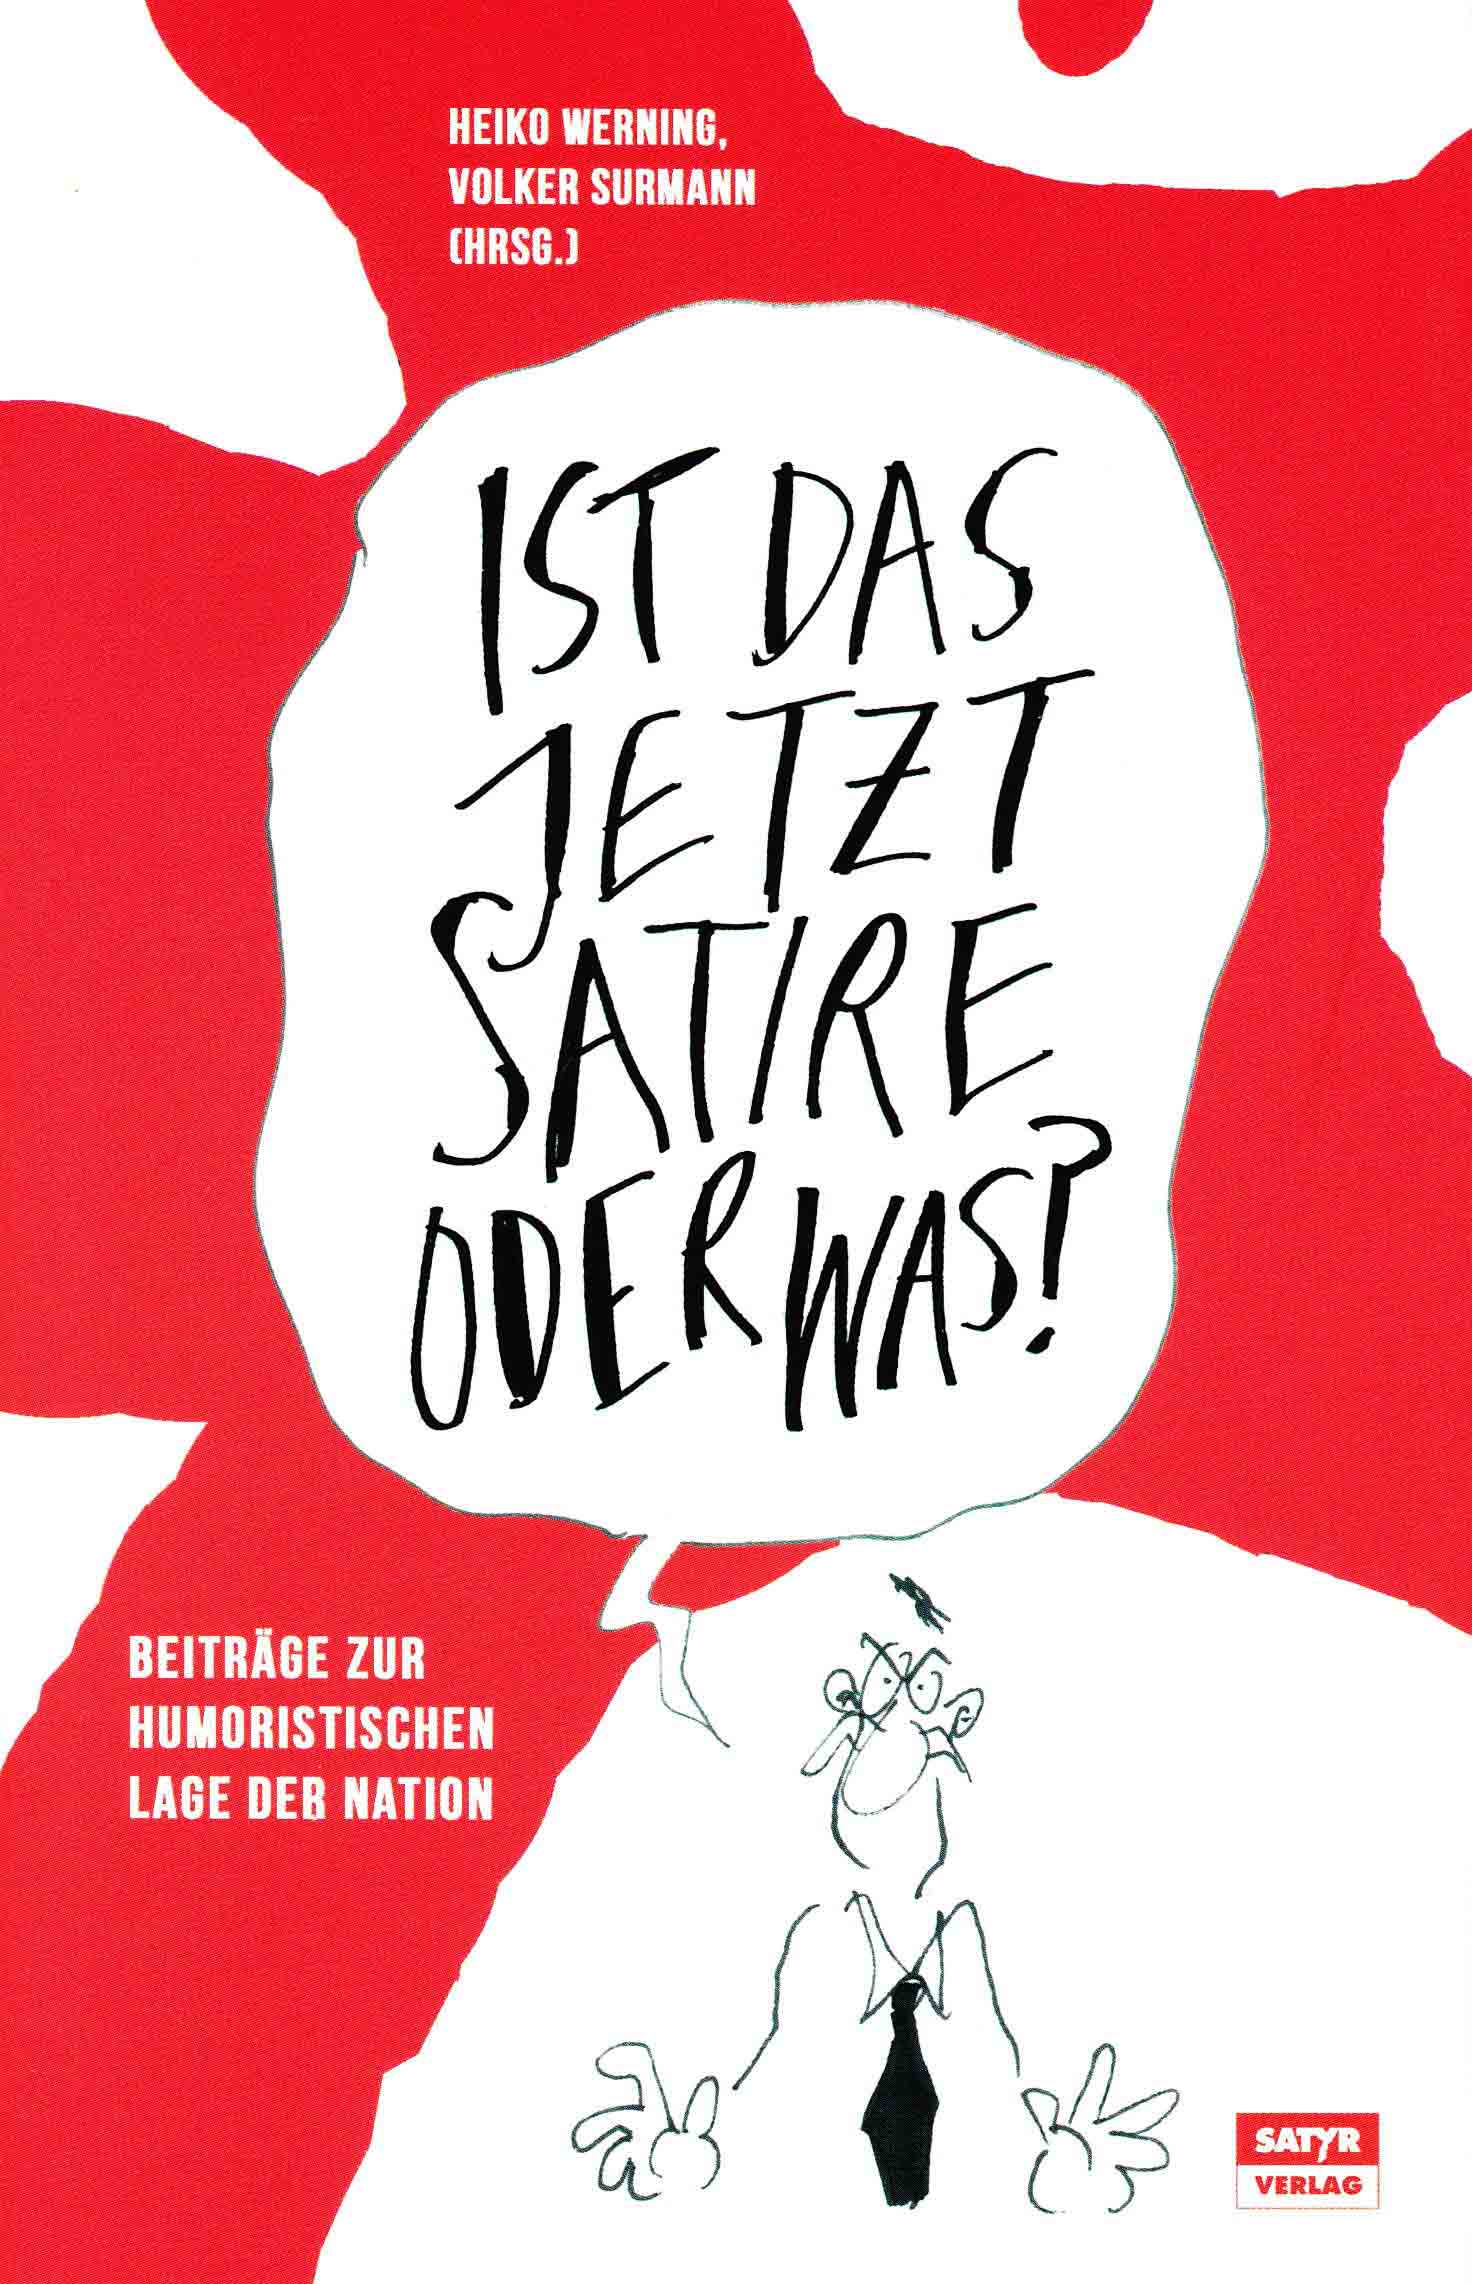 Surmann, Volker; Werning, Heiko (Hrsg.): Ist das jetzt Satire oder was? (Anthologie) Satyr verlag